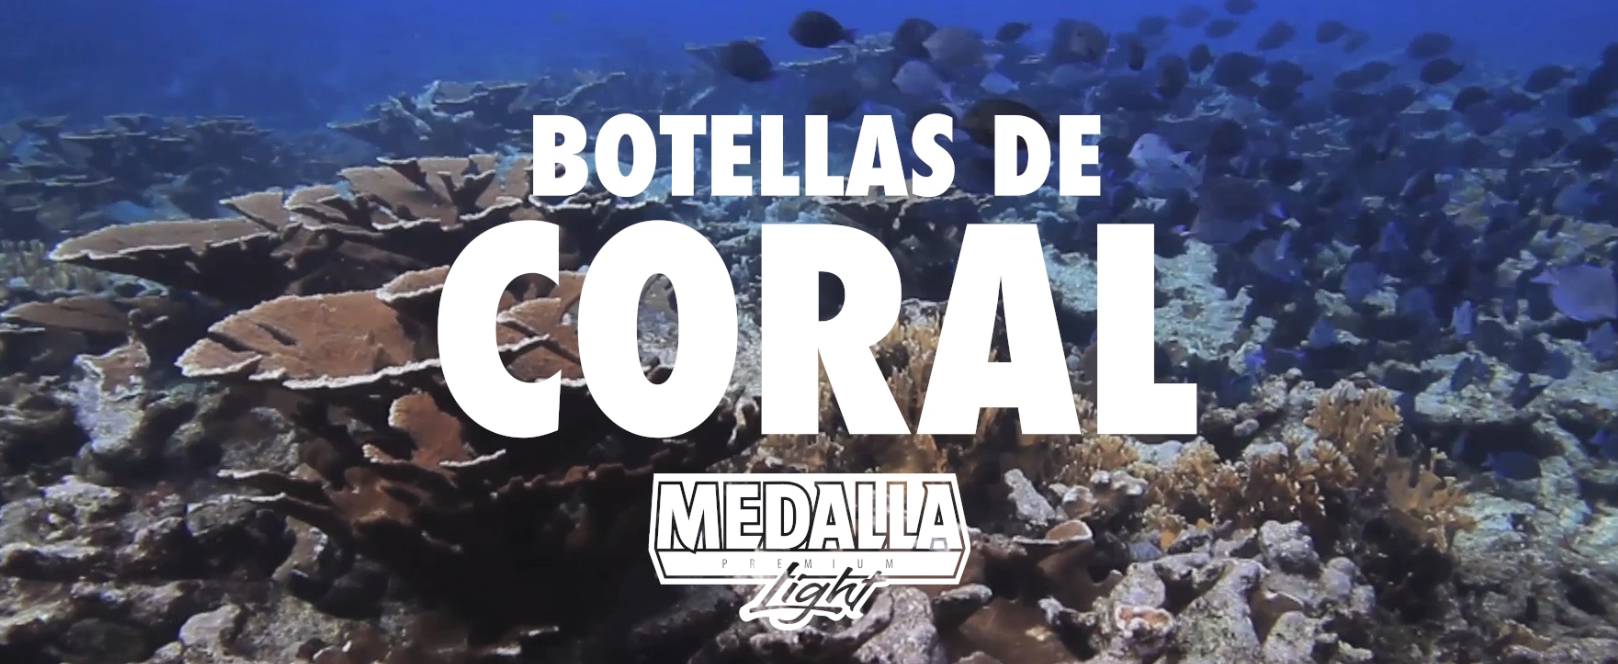 Botellas de Coral